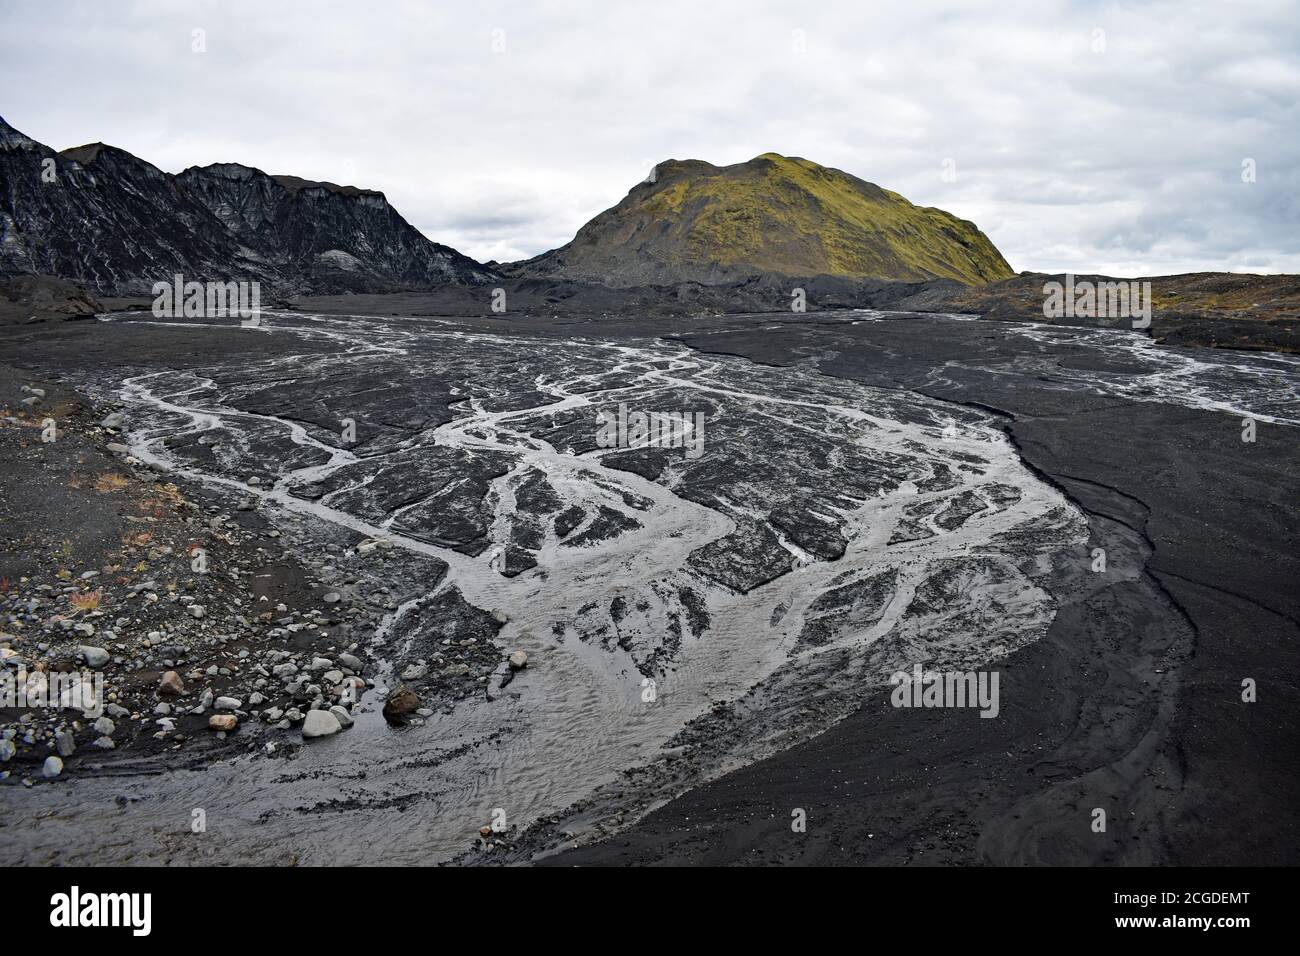 La sabbia vulcanica nera copriva il Ghiacciaio di Kotlujokull, un ghiacciaio di uscita di Myrdalsjokull. L'acqua di ghiaccio fusa crea un modello sulla sabbia. Islanda Foto Stock